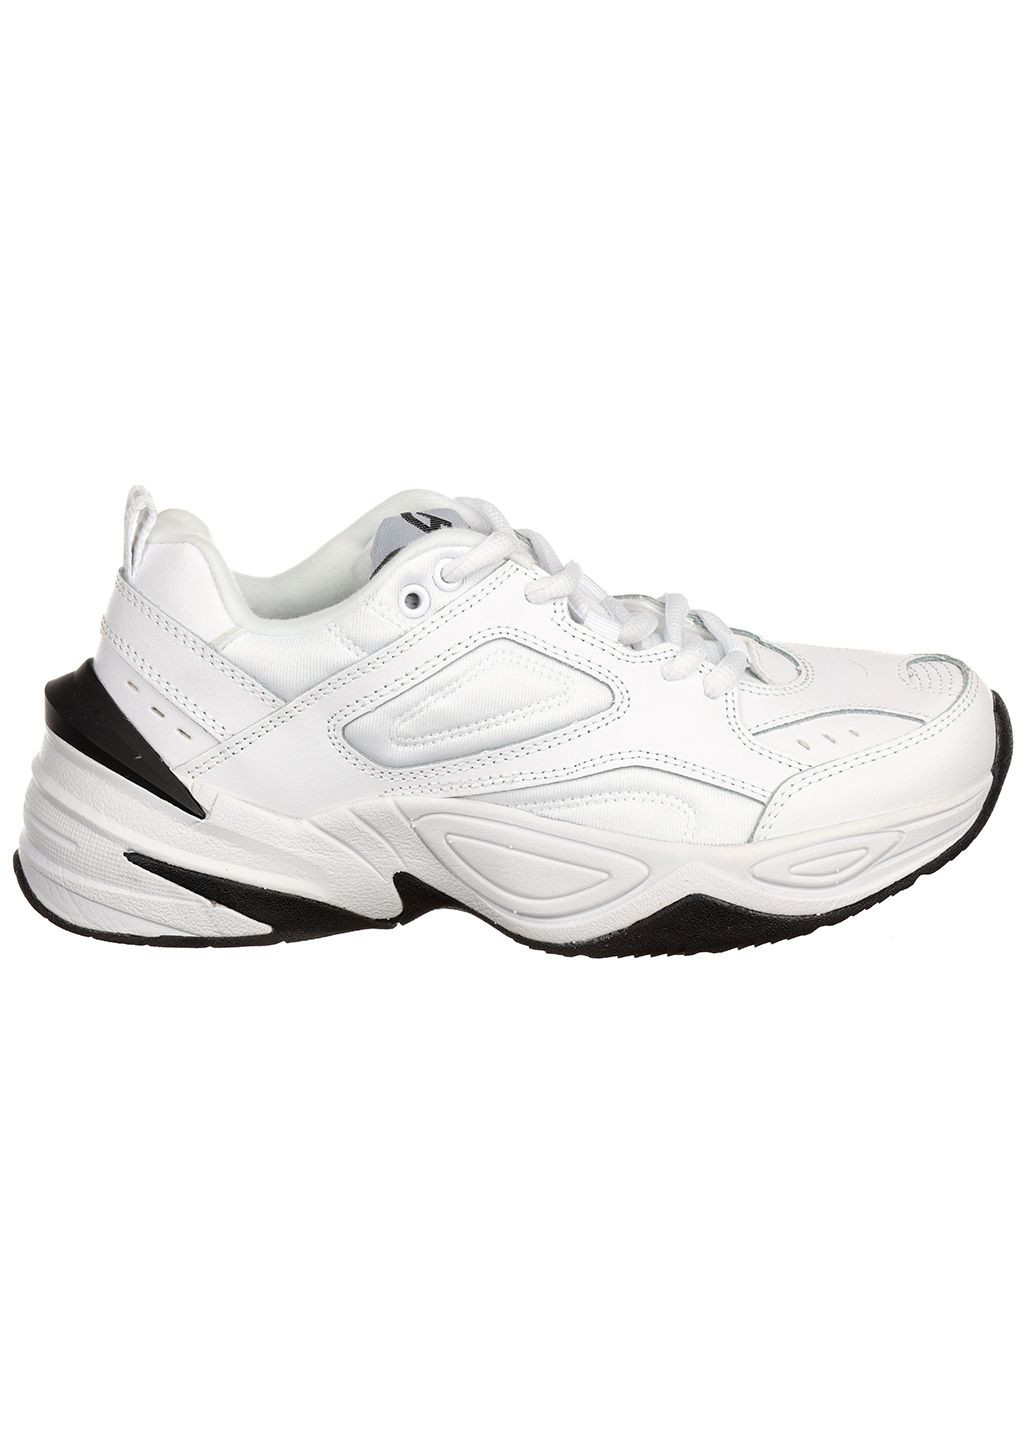 Белые демисезонные женские кроссовки из кожи g3452-2 Classica